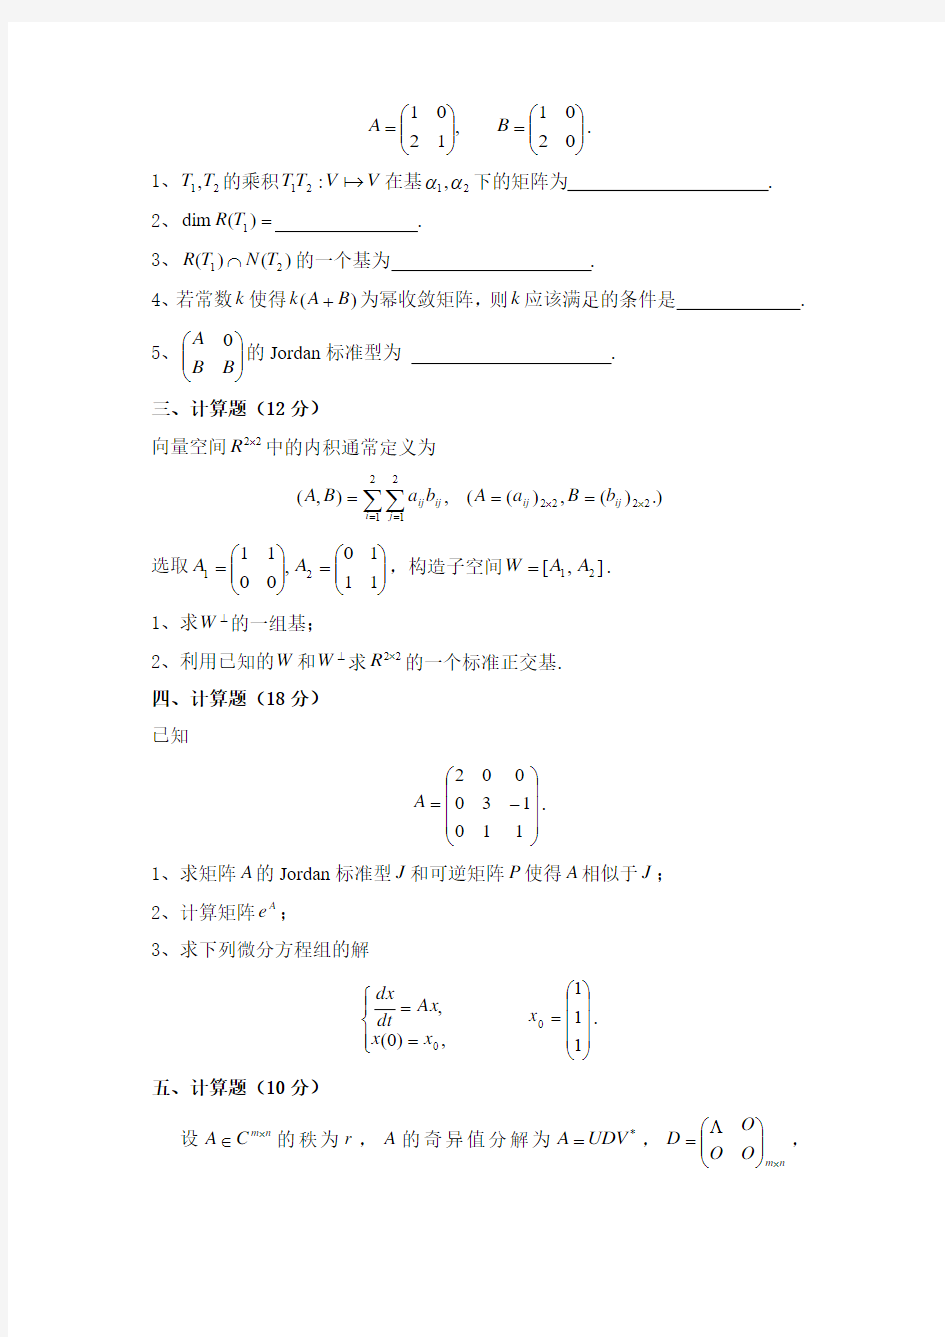 上海交通大学2010-2011学年《矩阵理论》试卷本试卷共四道大题,总分